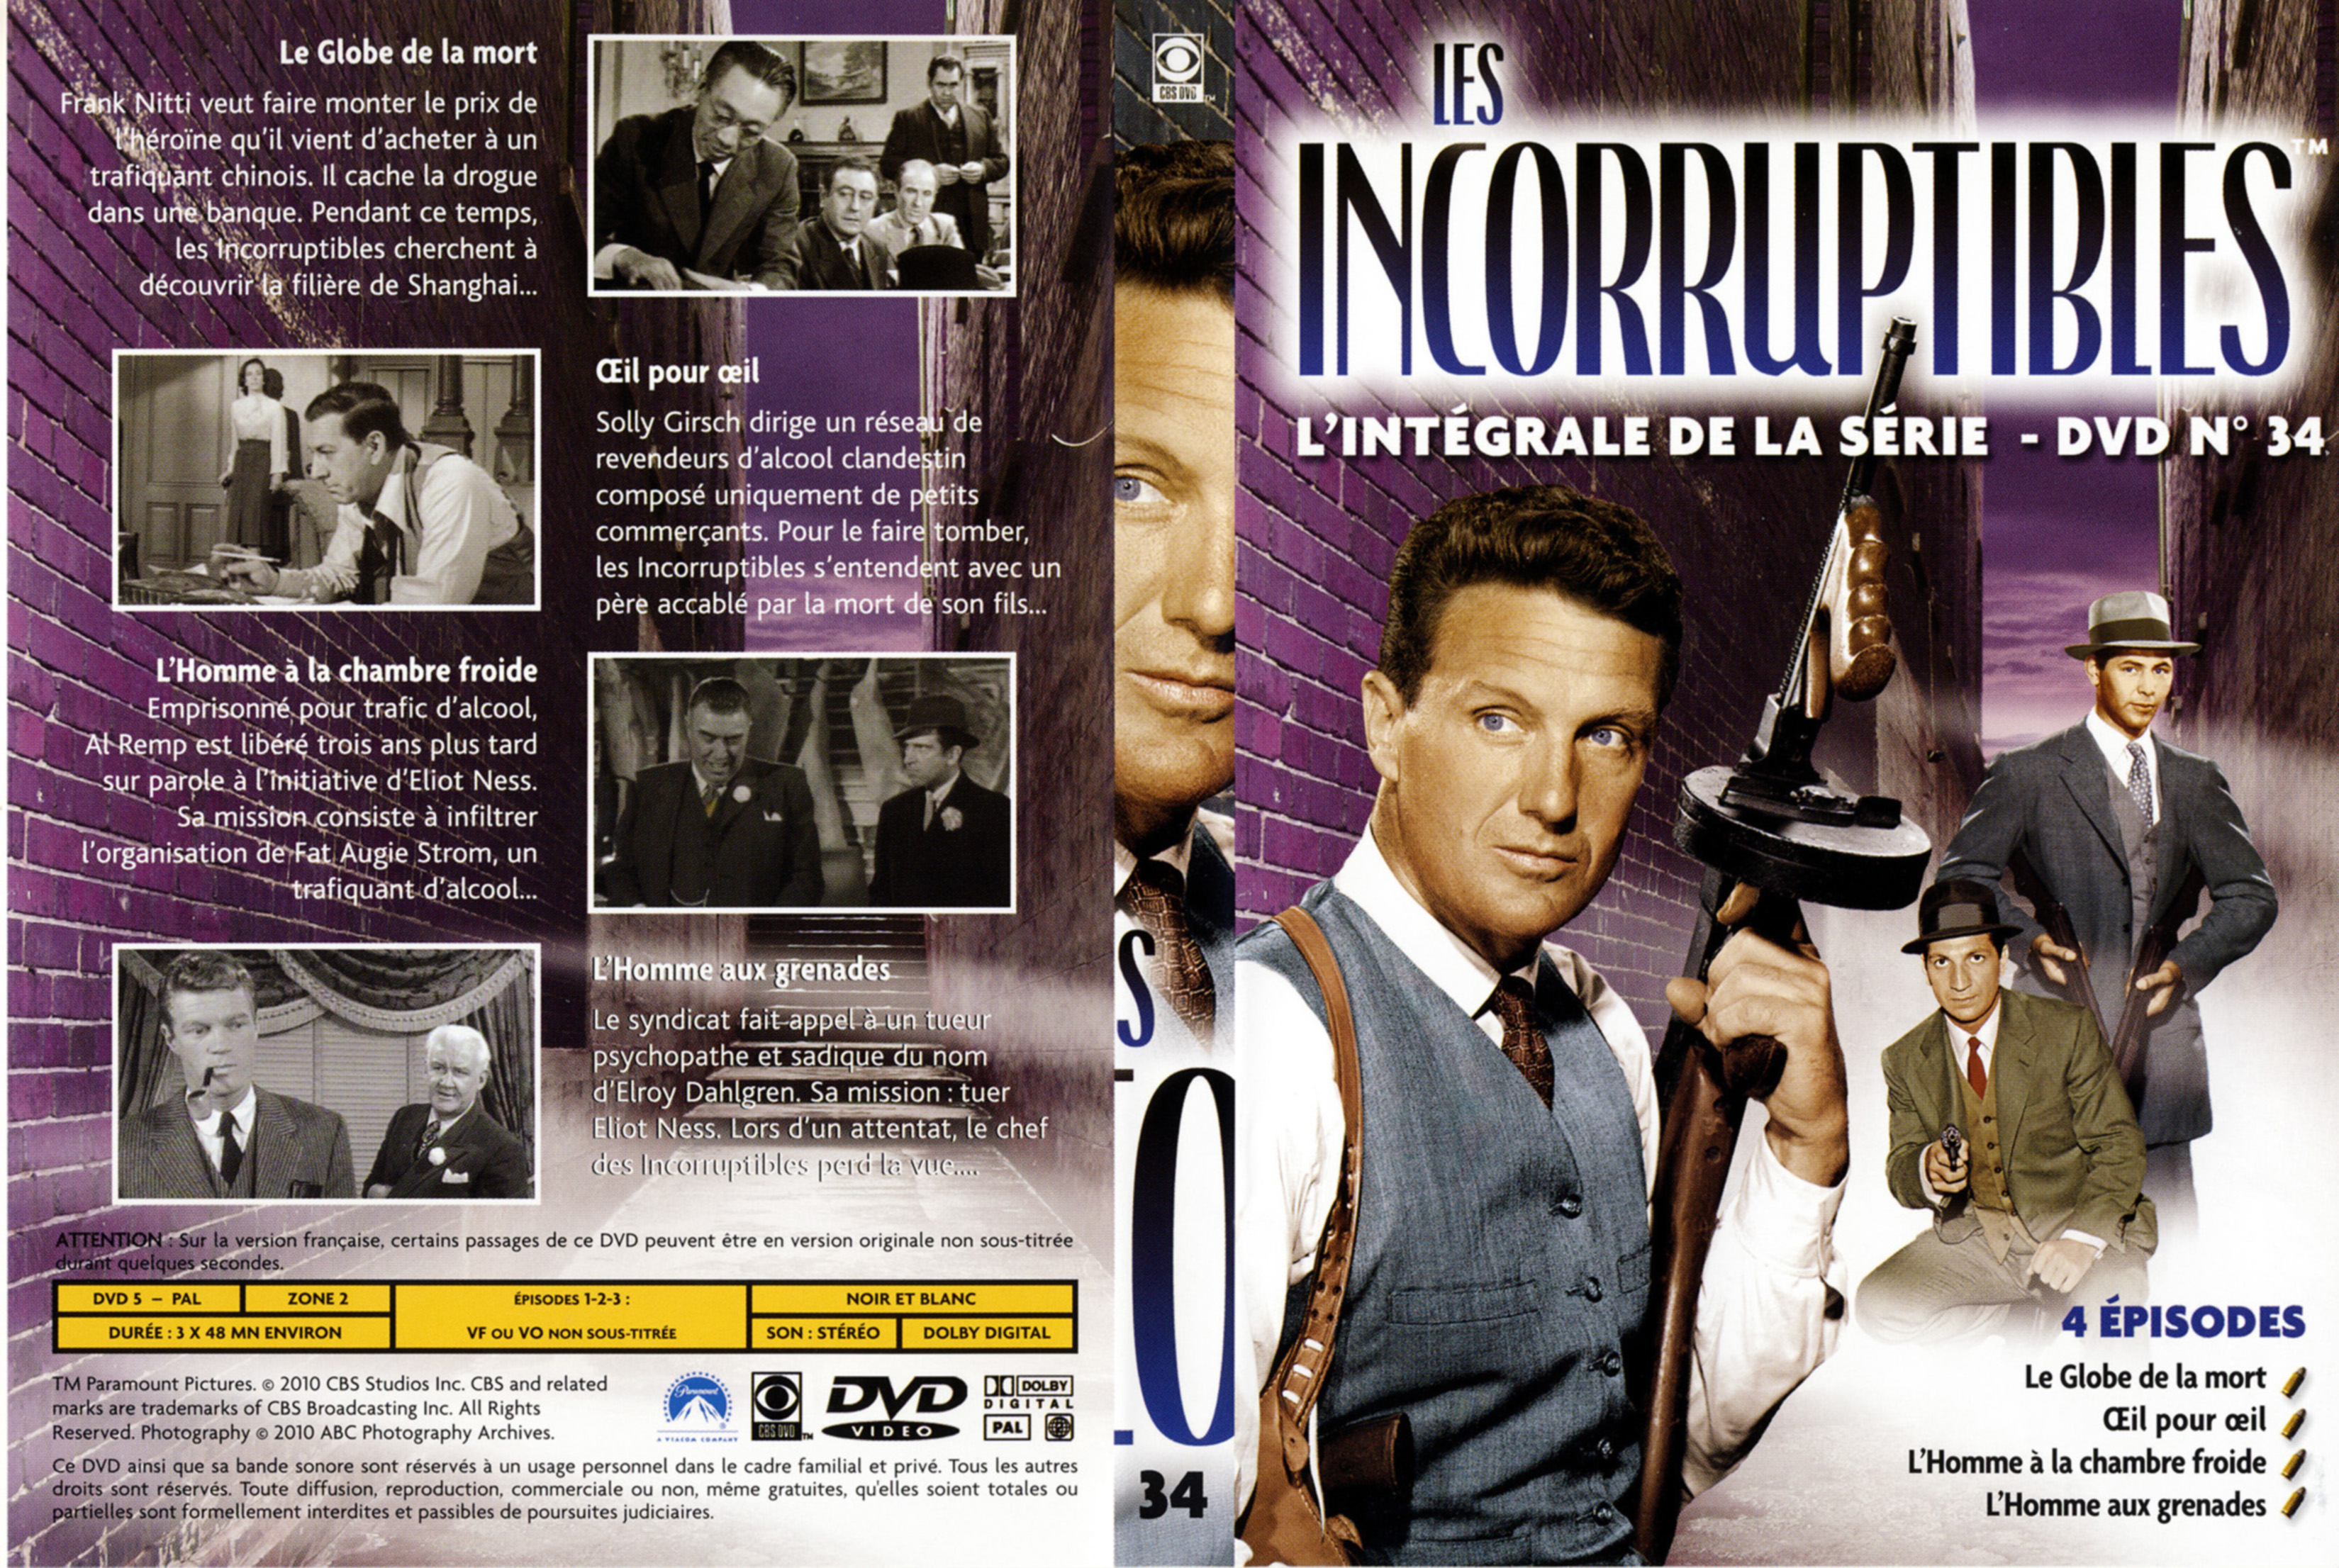 Jaquette DVD Les incorruptibles intgrale DVD 34